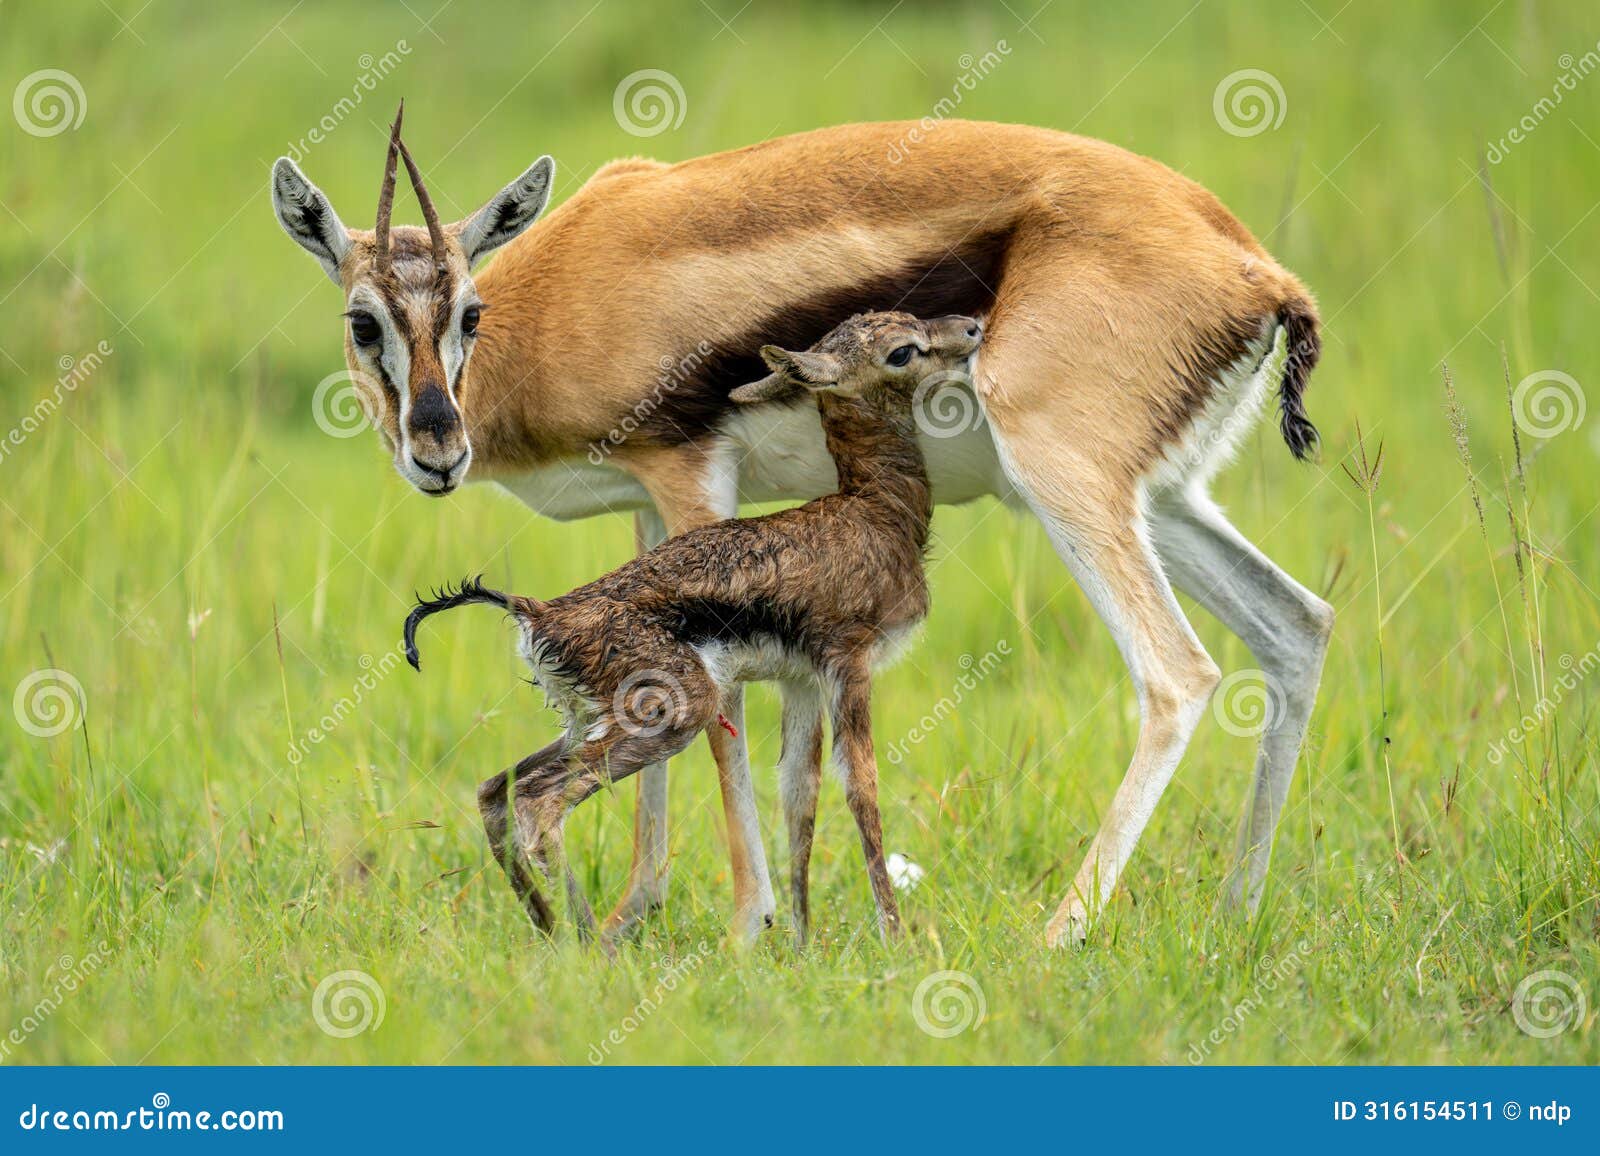 thomson gazelle stands beside newborn in grass